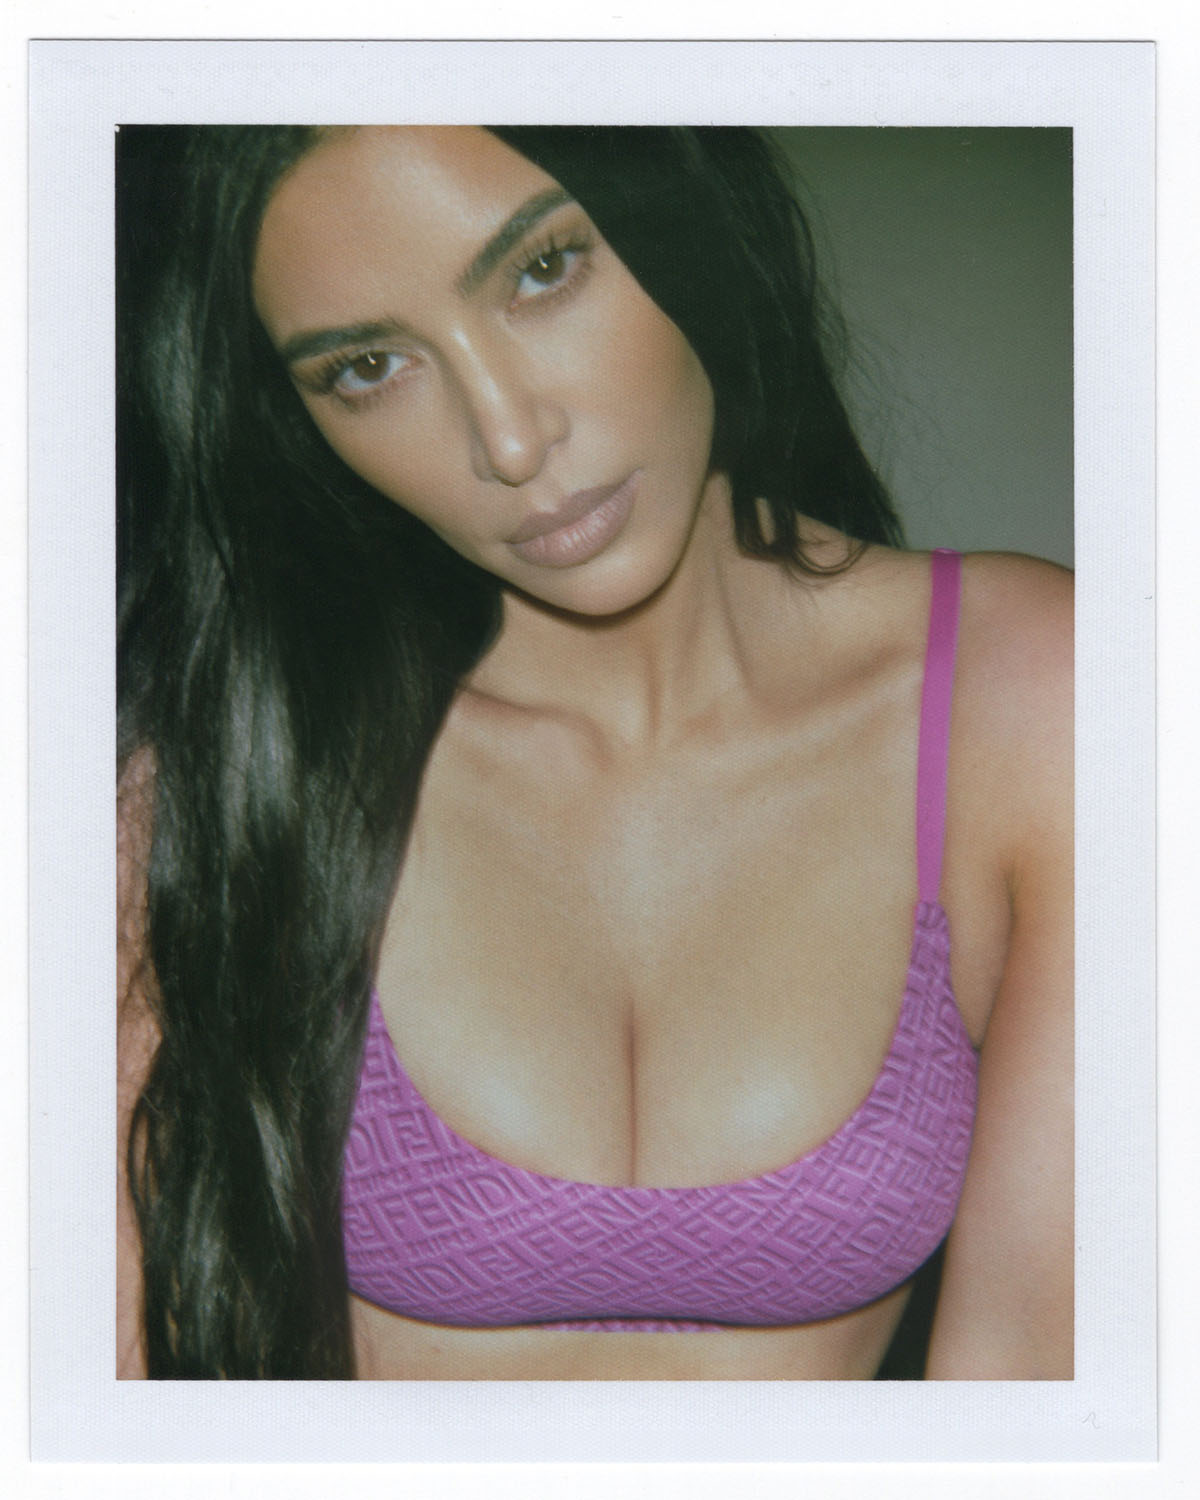 Kim Kardashian shows off raunchiest Skims line yet including bra